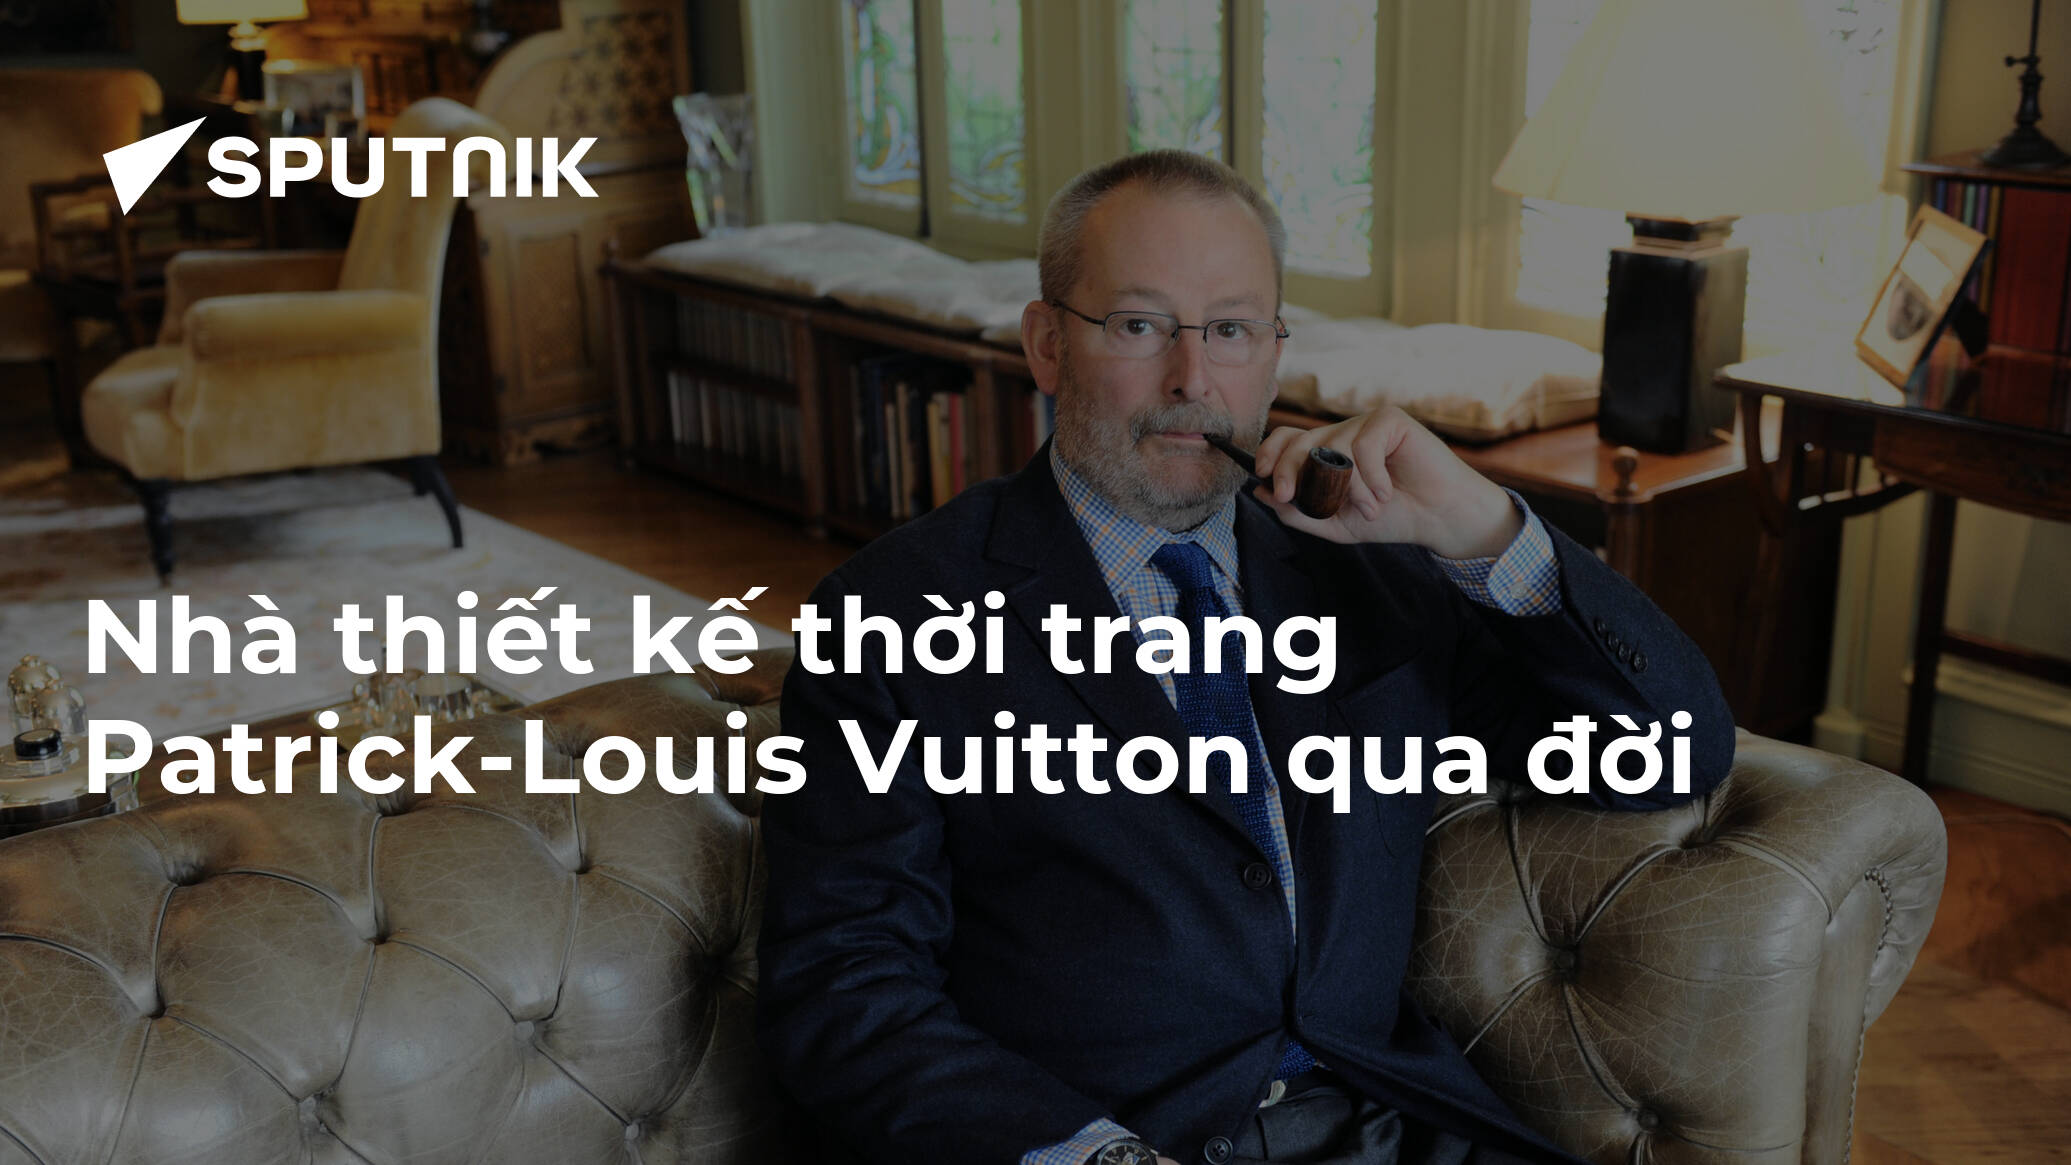 Nhà thiết kế thời trang Patrick-Louis Vuitton qua đời - 08.11.2019, Sputnik  Việt Nam